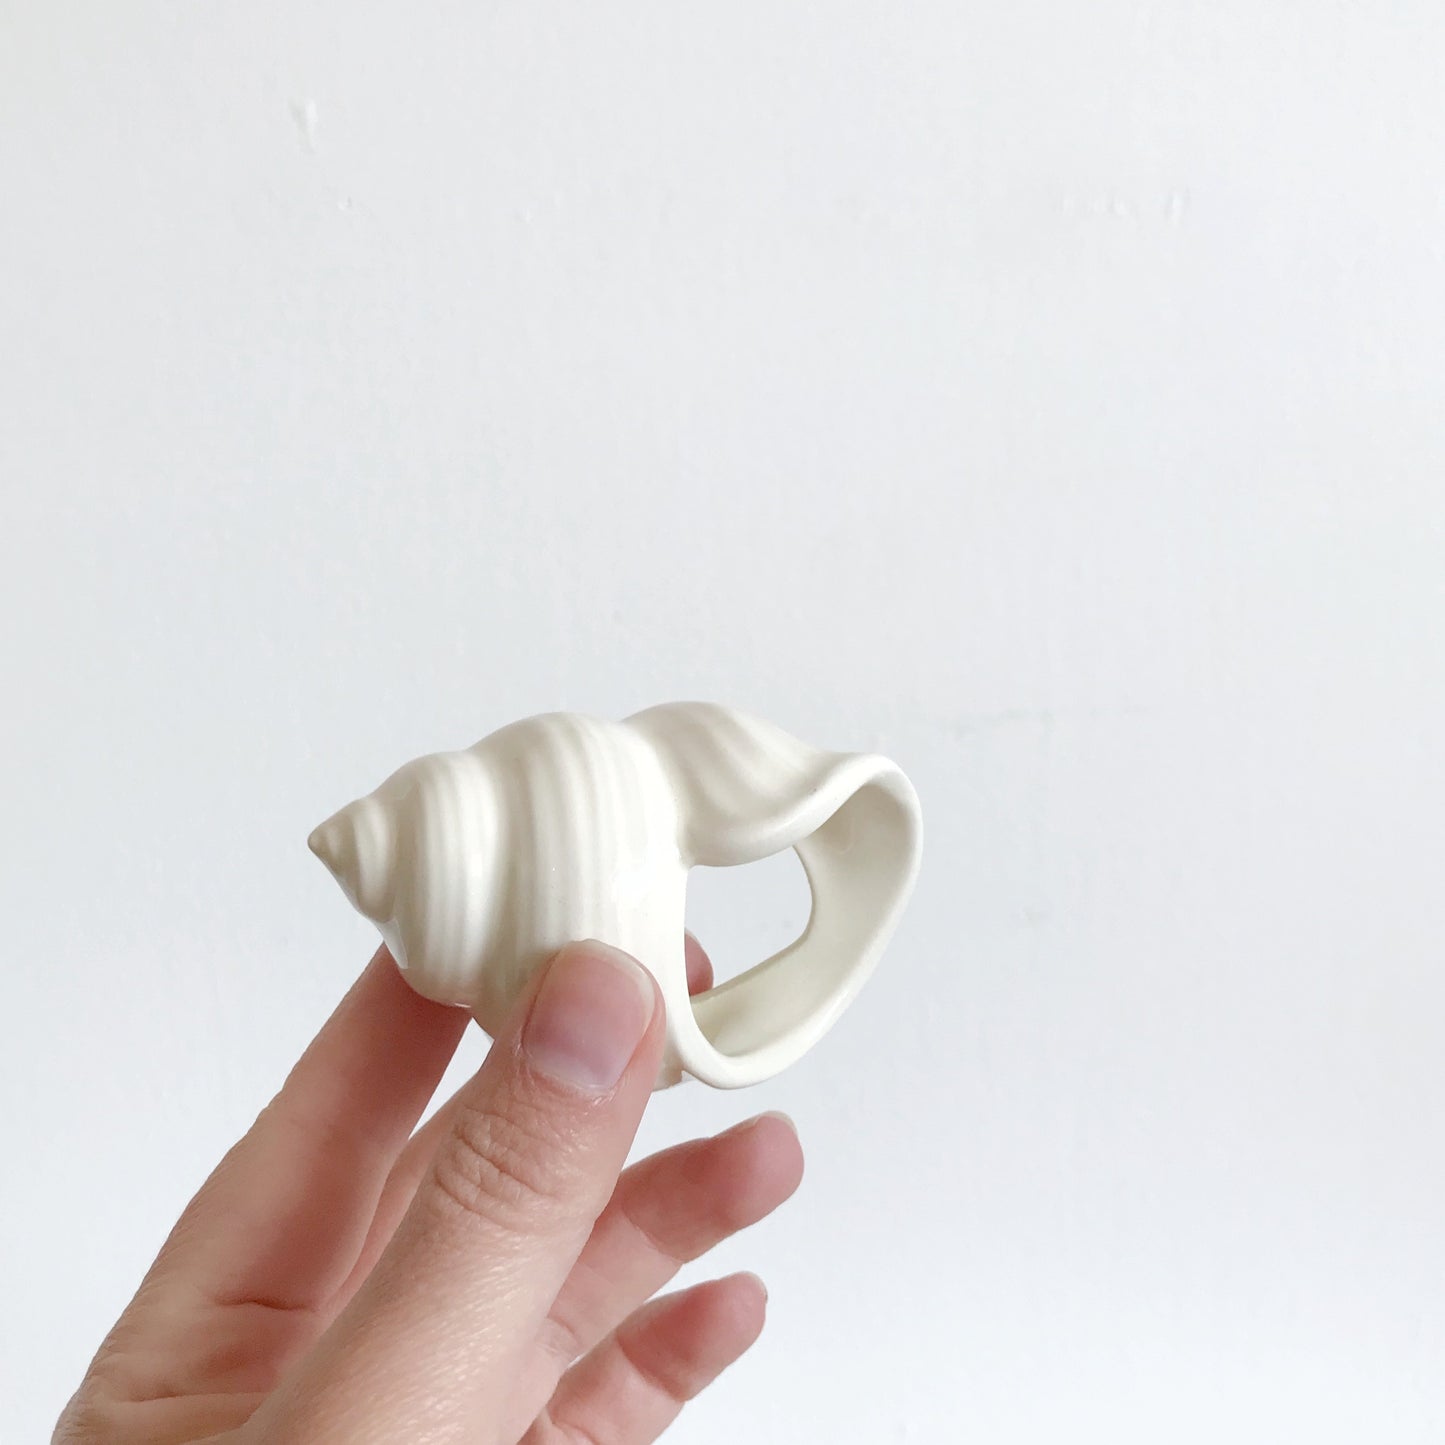 Set of 6 Ceramic Shell Napkin Rings